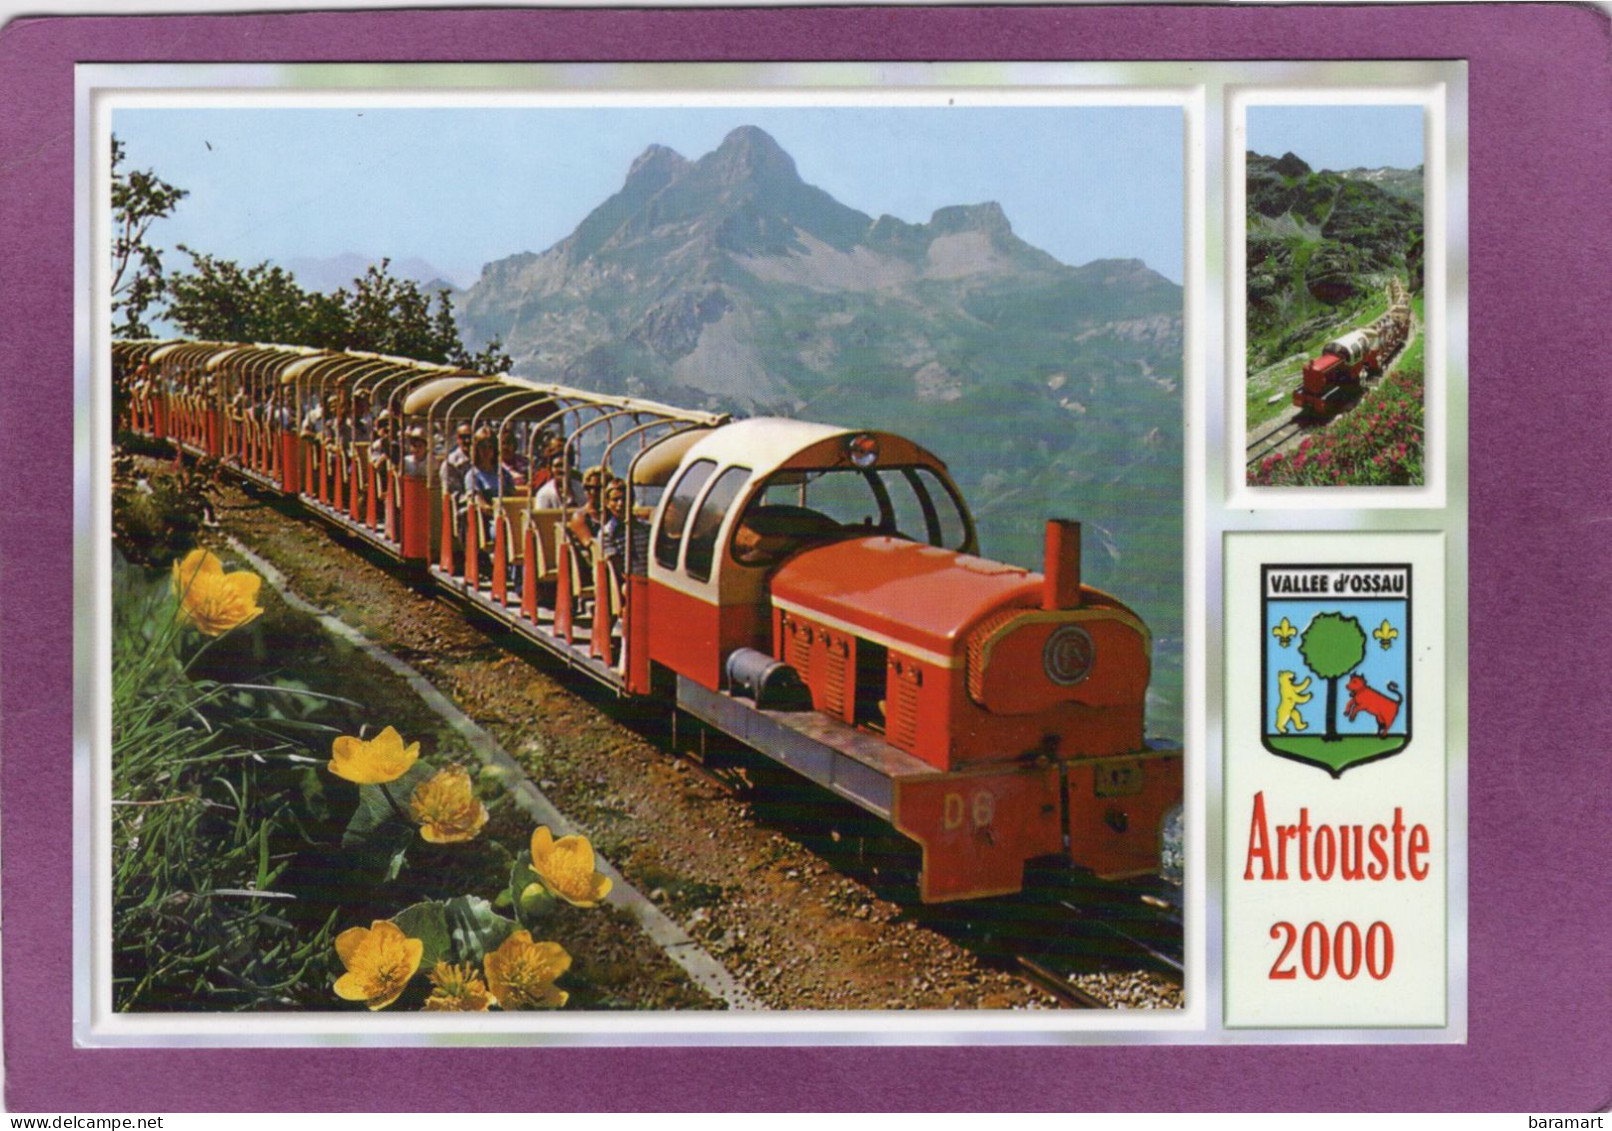 64 LARUNS Le Petit Train D'Artouste Le Pic Du Midi D'Ossau 2885 M Blason Vallée D'Ossau - Laruns